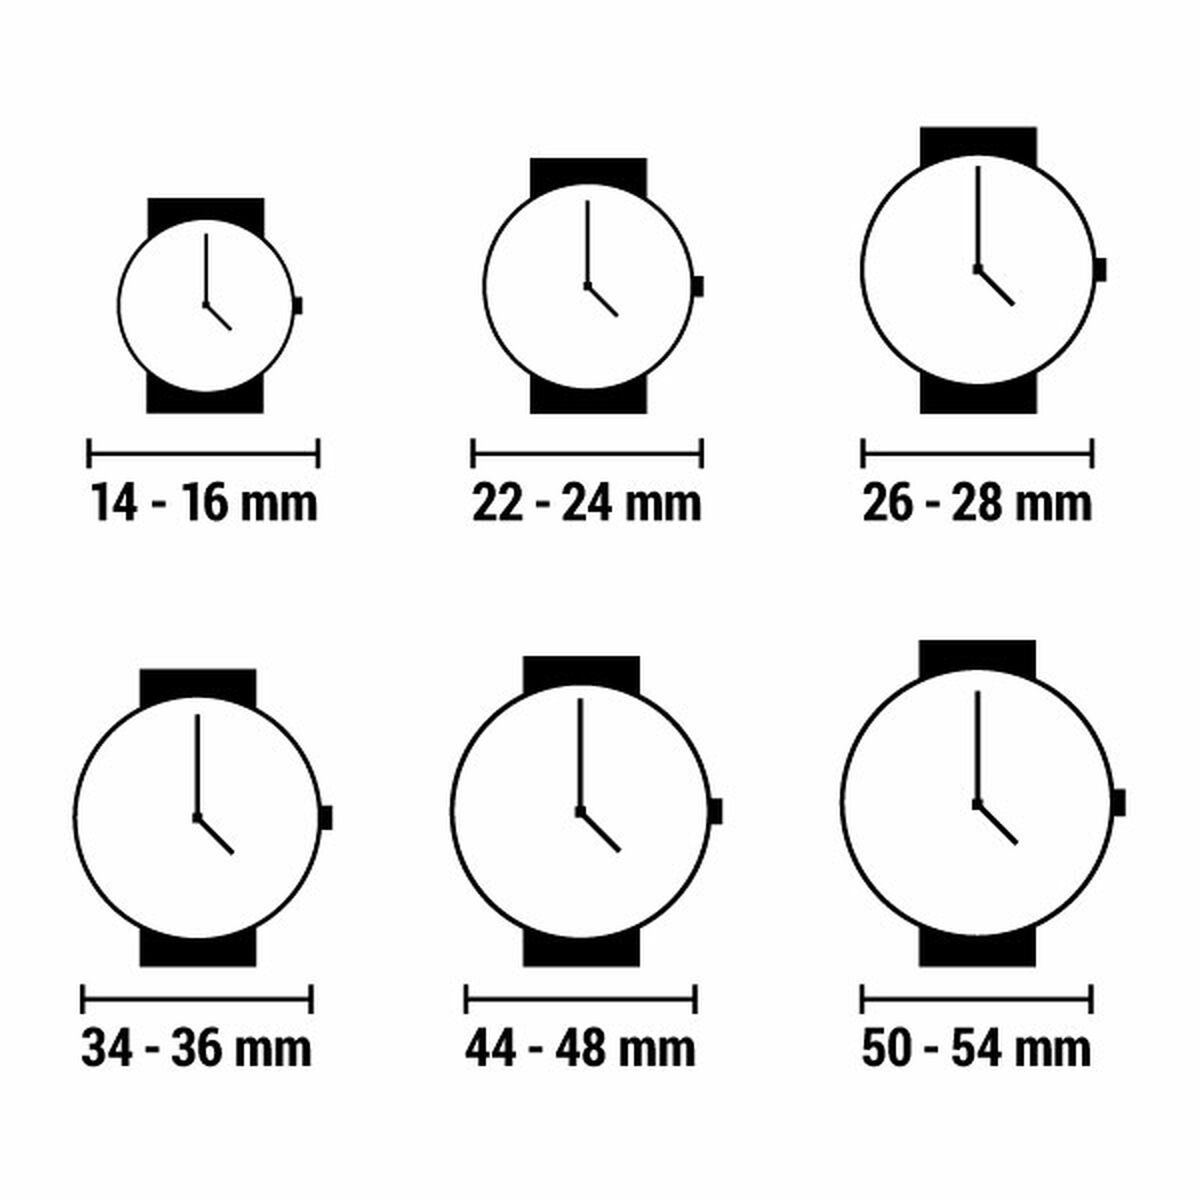 Horloge Dames Frederique Constant CLASSIC DELIGHT (Ø 33 mm)